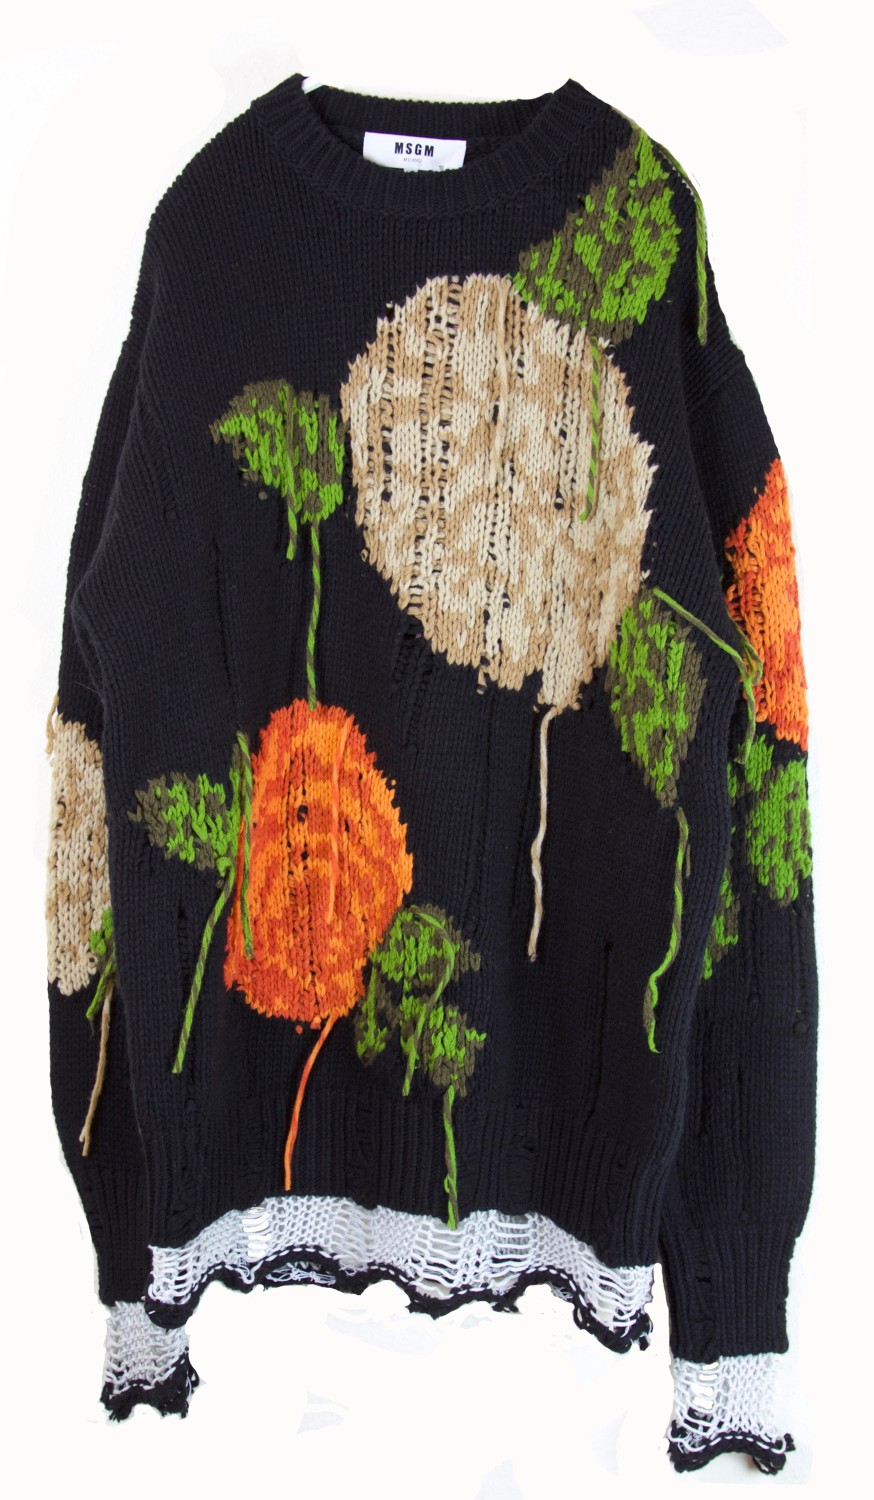 shop MSGM  Maglie: Maglia lunga MSGM girocollo, in 80% di lana e 20% poliammide, fatto a mano, nero con fiori arancio, bianco e verde. number 761